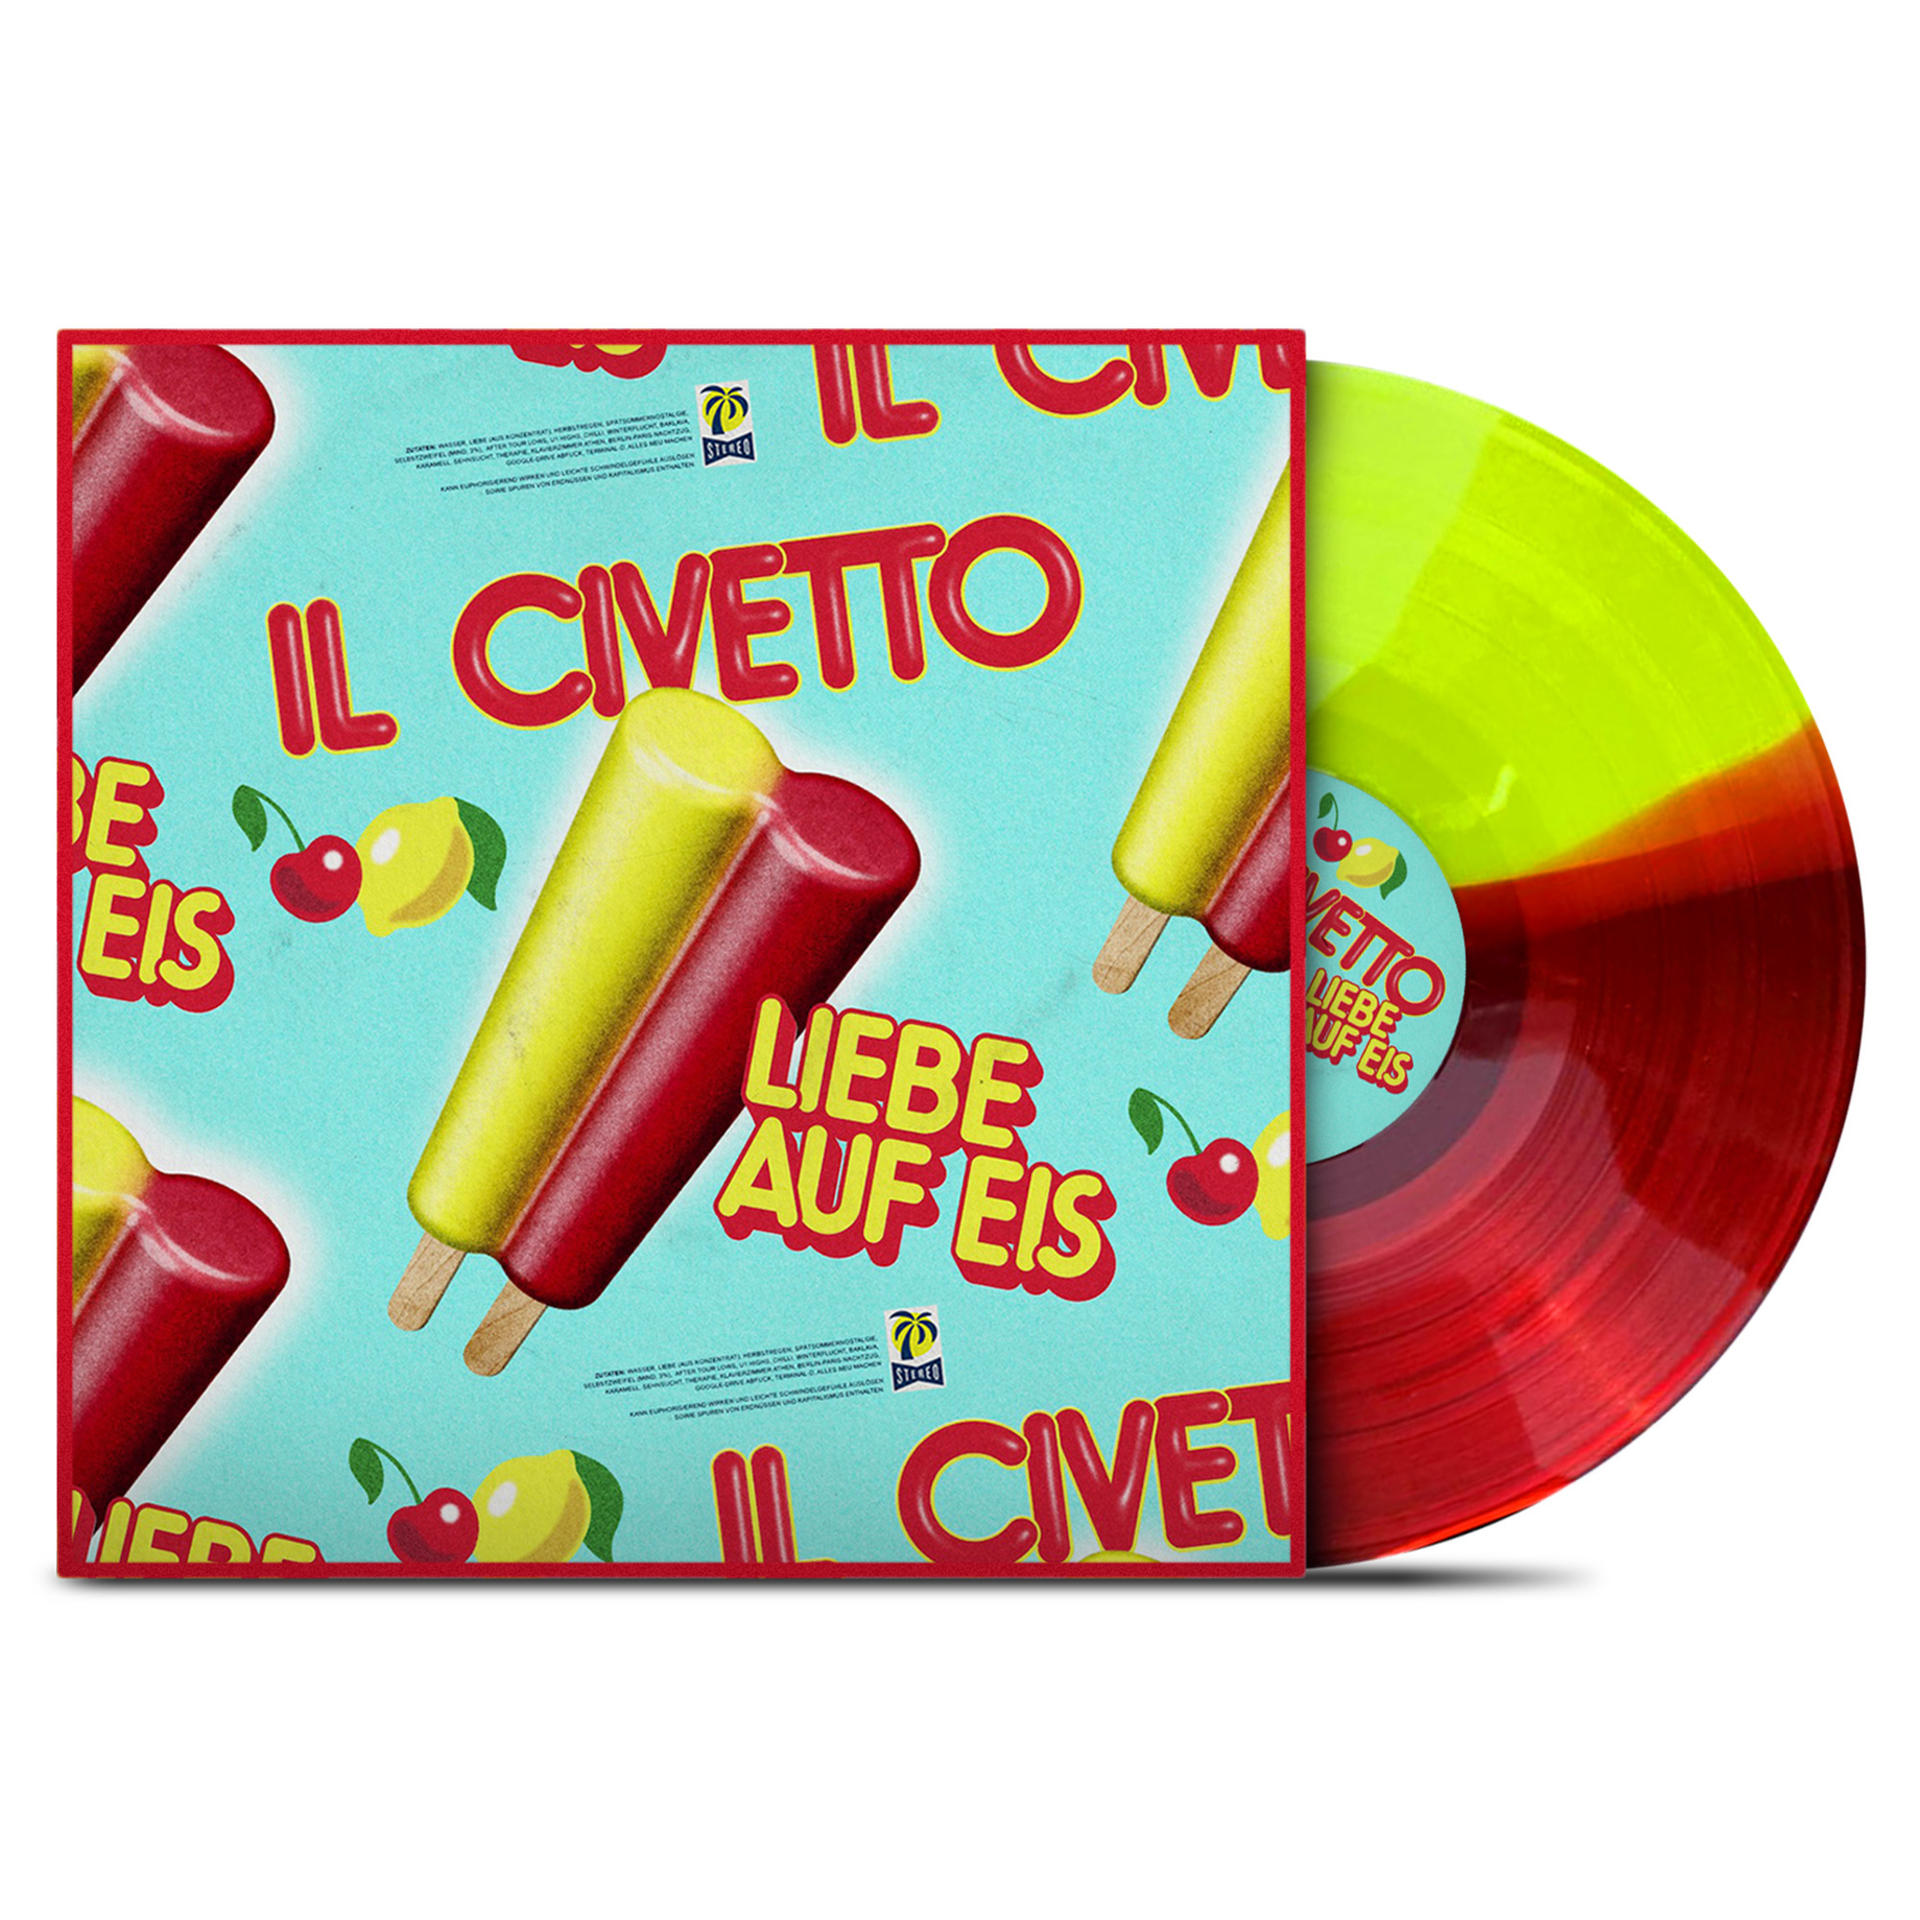 Il - Civetto Liebe Eis auf (Vinyl) -